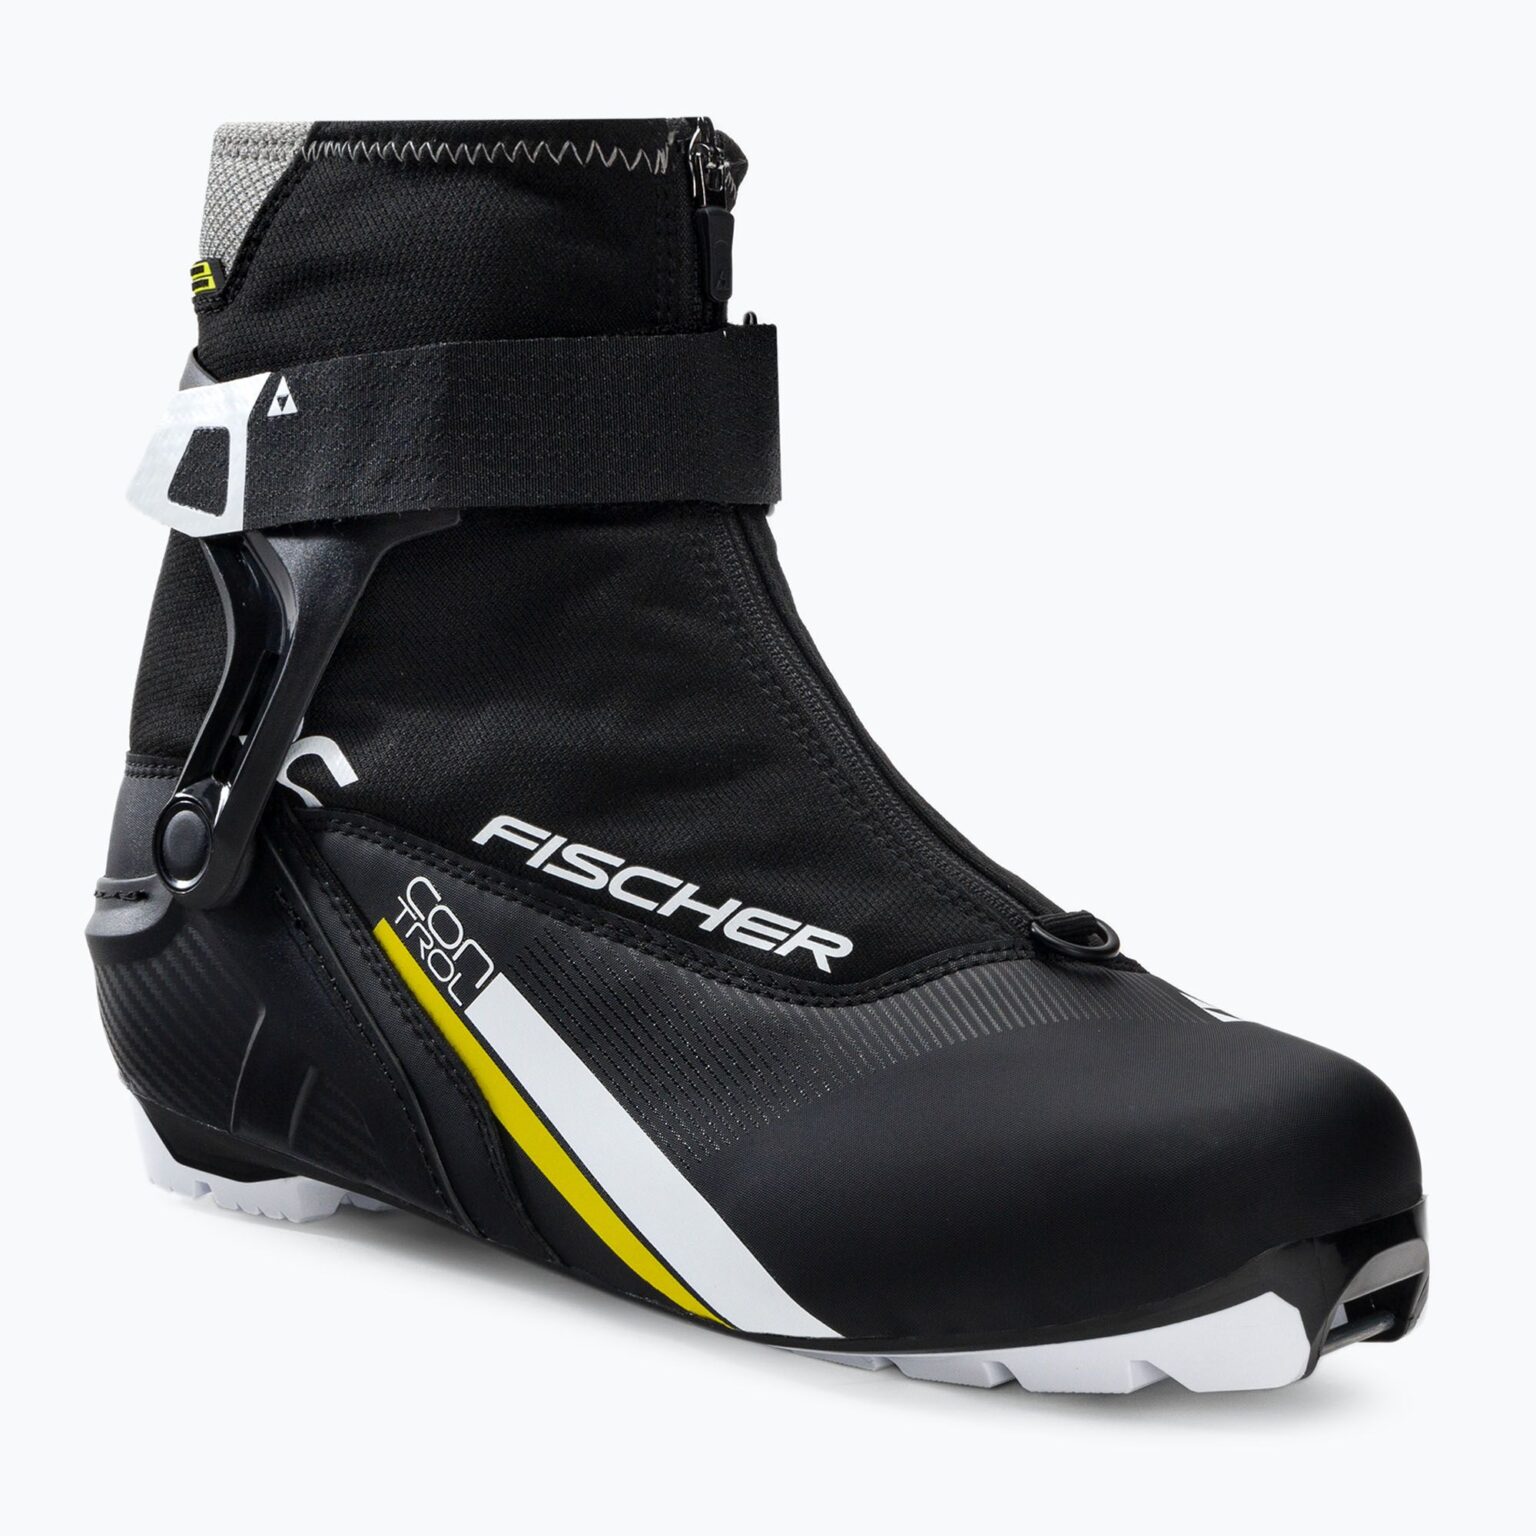 Buty do nart biegowych Fischer XC Control black/white/yellow